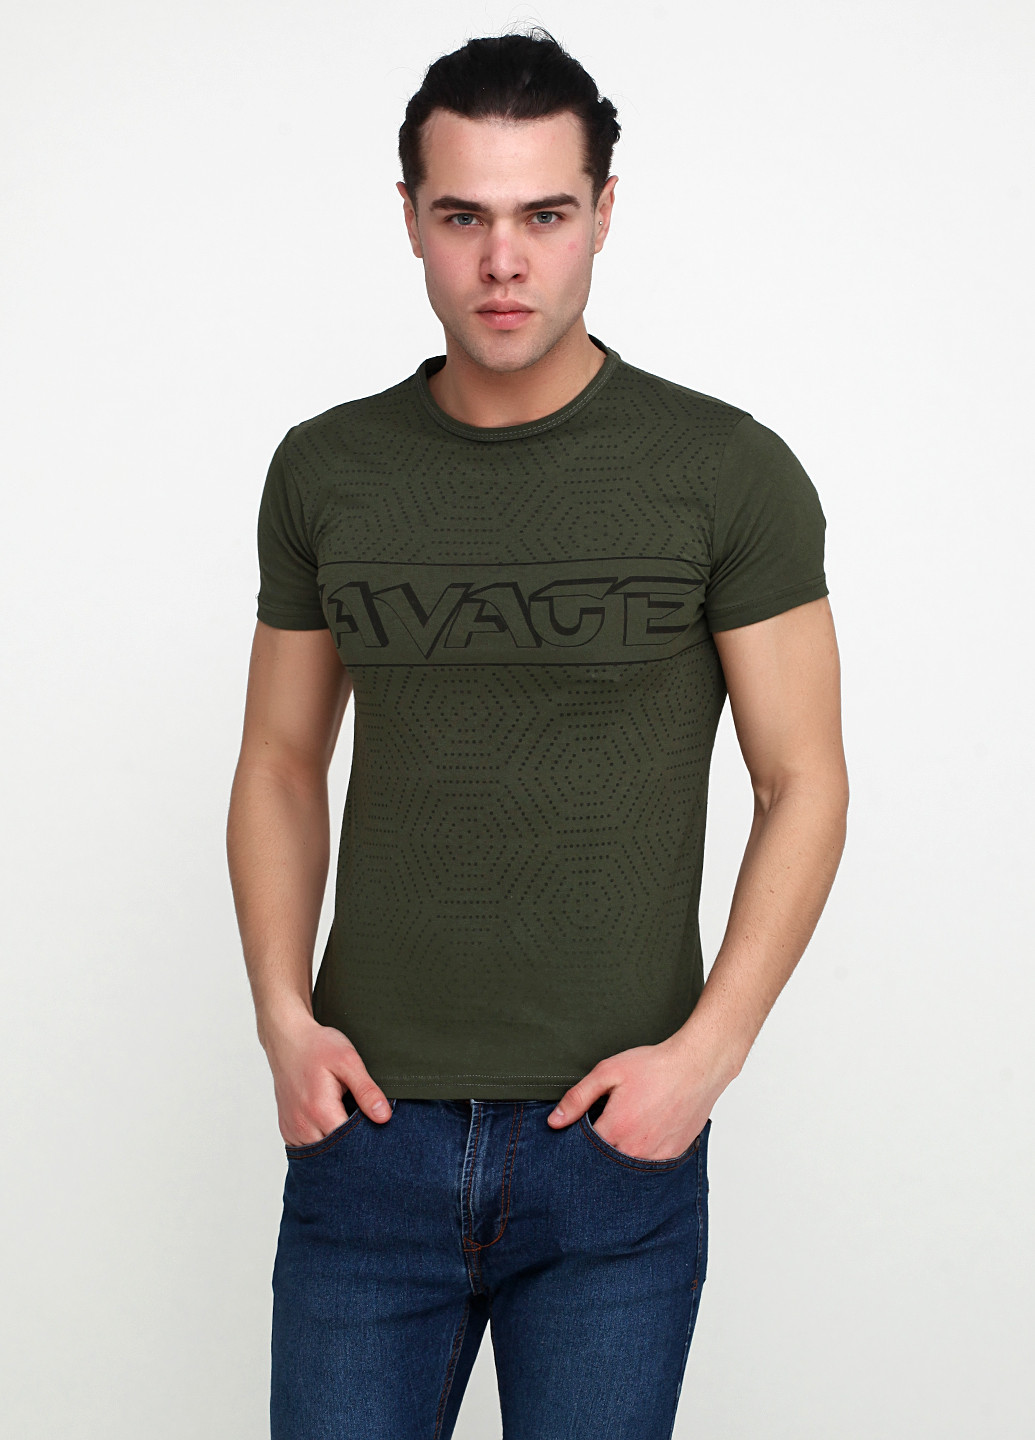 Хакі (оливкова) футболка Benger